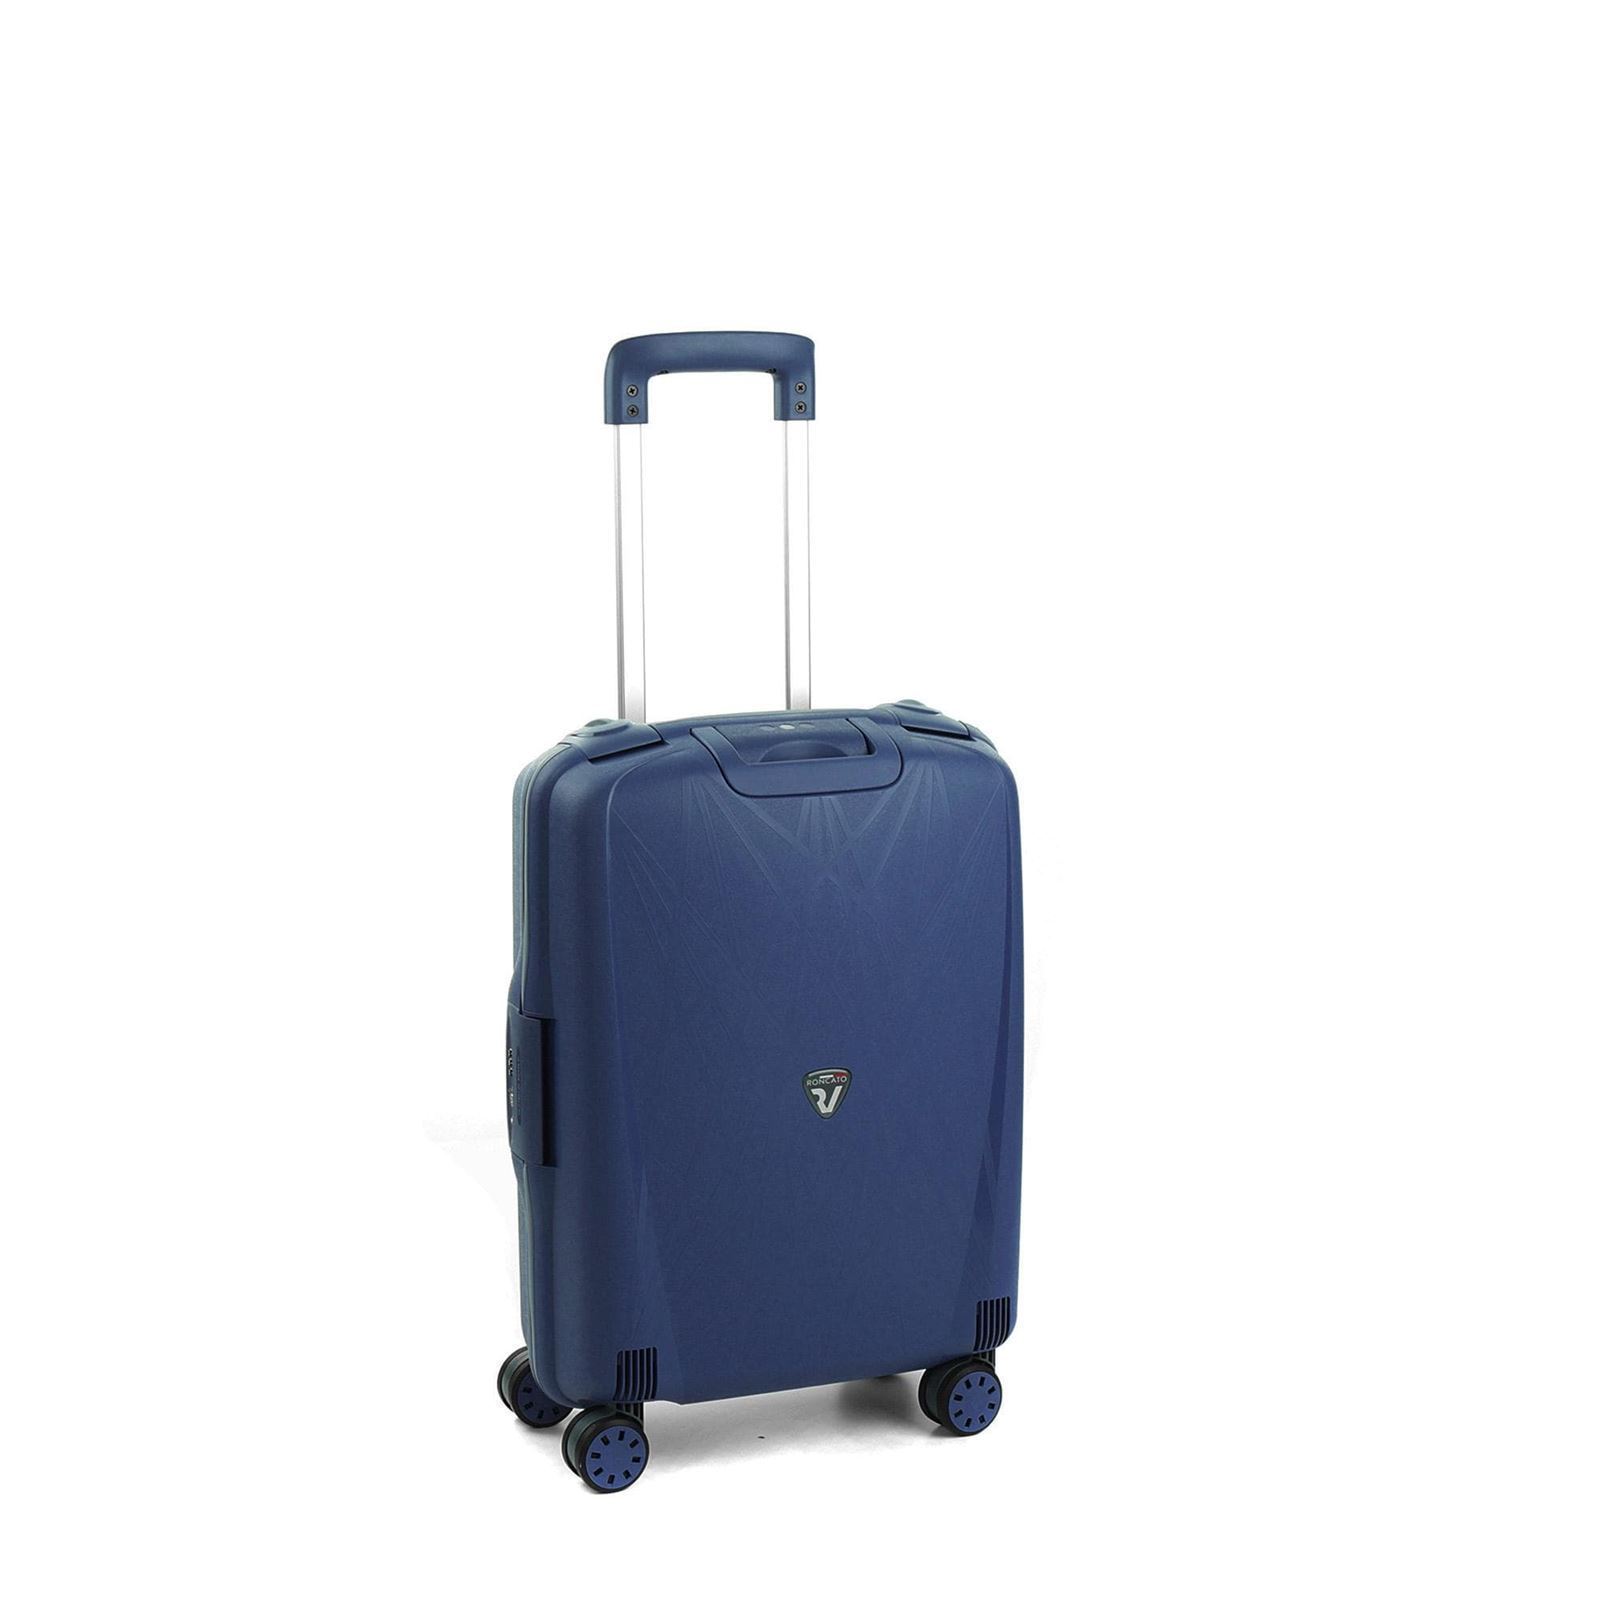 maleta cabina Roncato light spinner 4 ruedas azul marino - Imagen 1